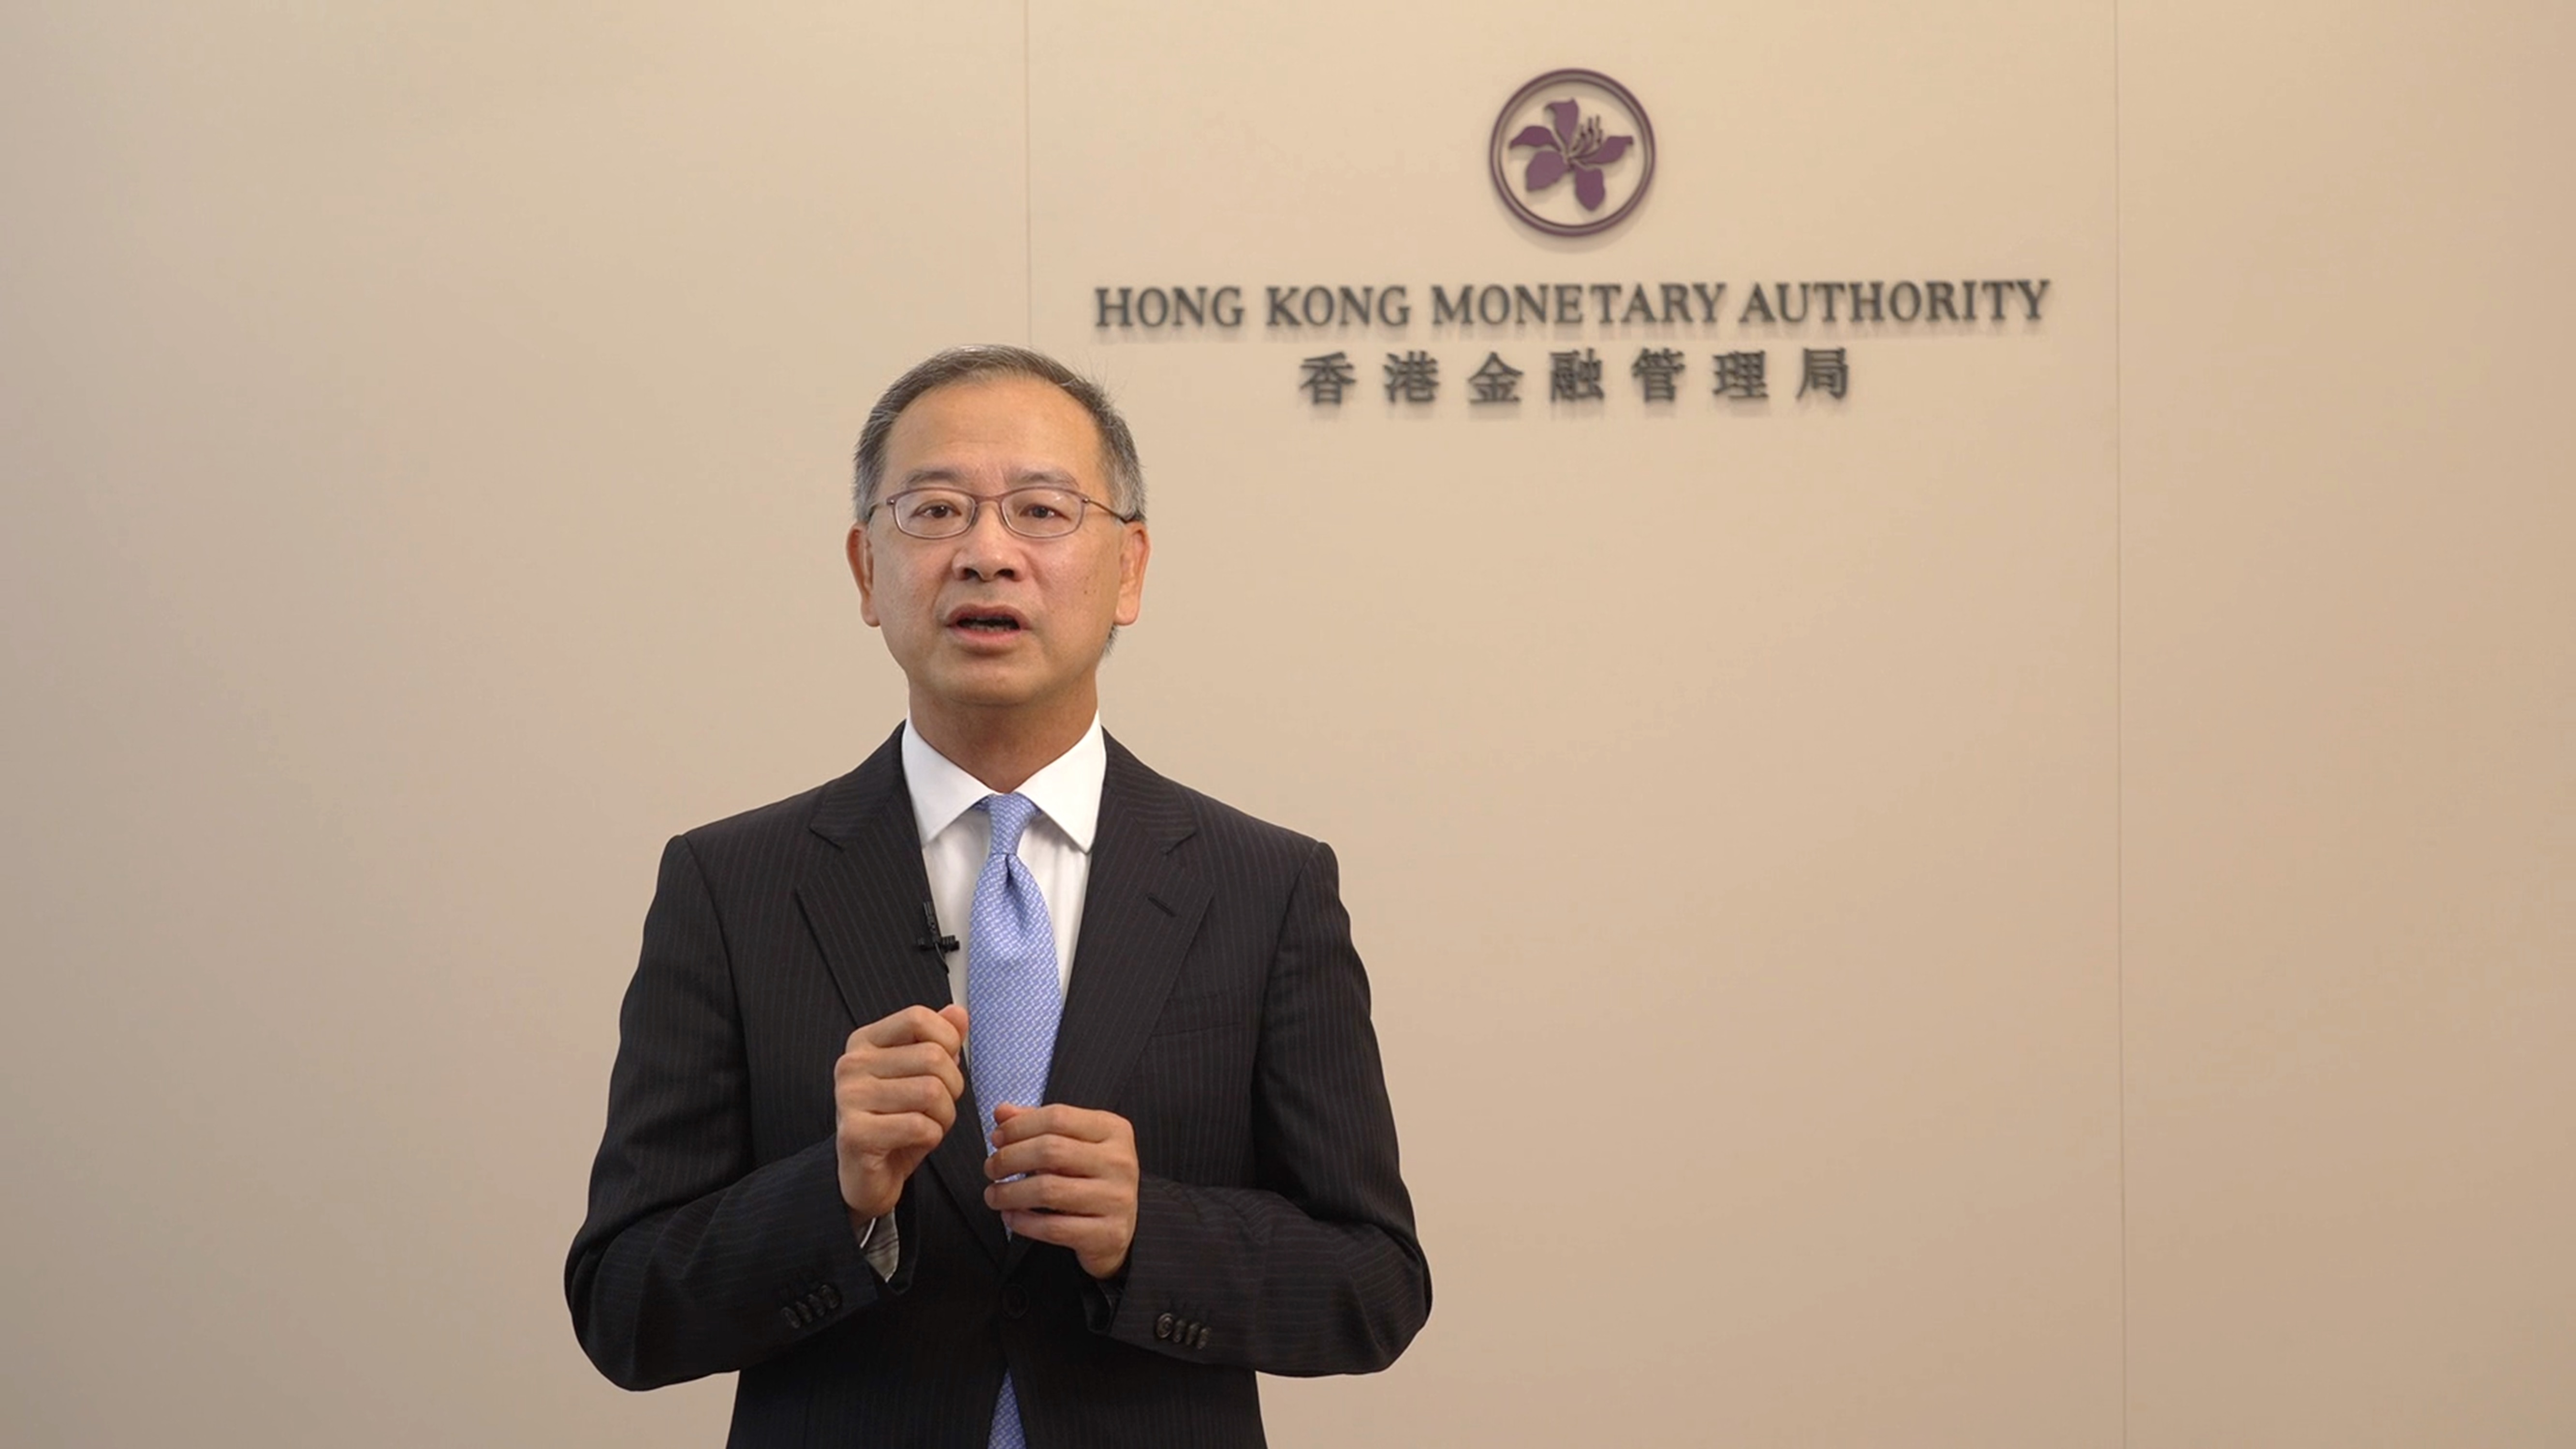 香港金融管理局总裁余伟文表示金融科技创新监管『联网』让粤港澳大湾区更好发挥金融科技的优势，促进区内创新发展。